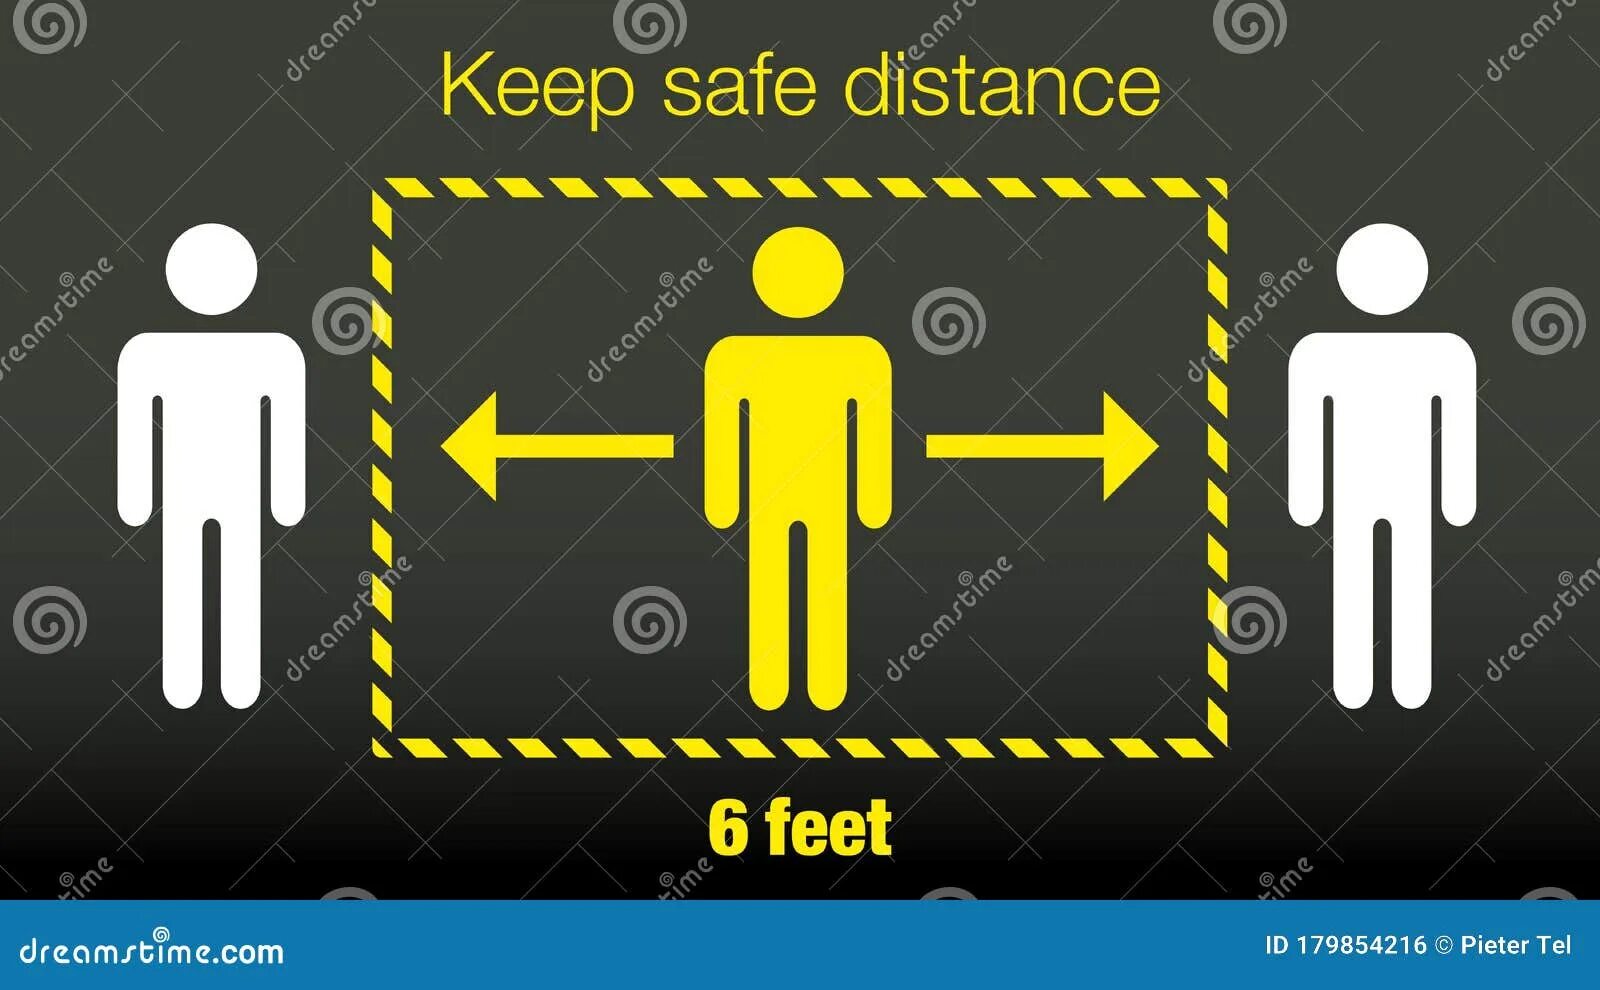 Keep me safe. Safe перевод. Safe Keeper. Keep your distance stay safe. И safe Keeper от.